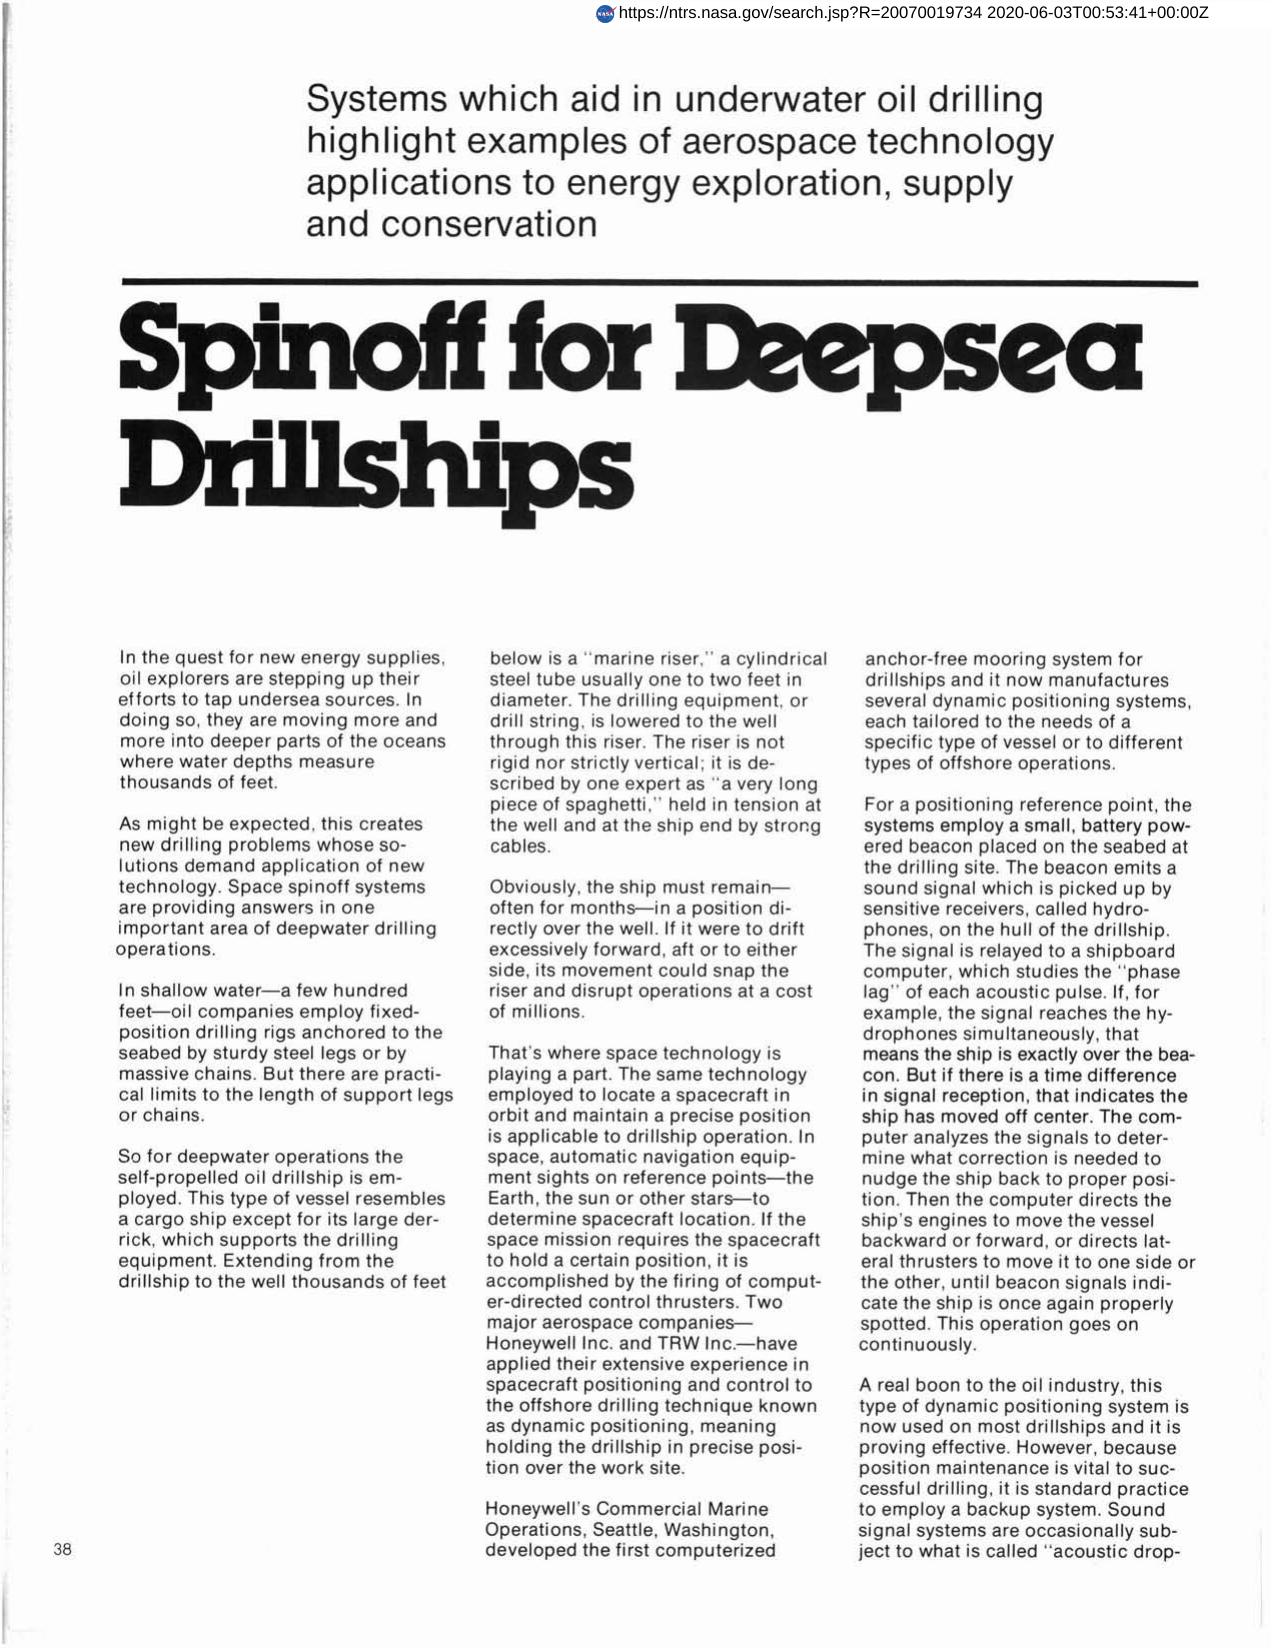 Spinoff for Deepsea Drillships